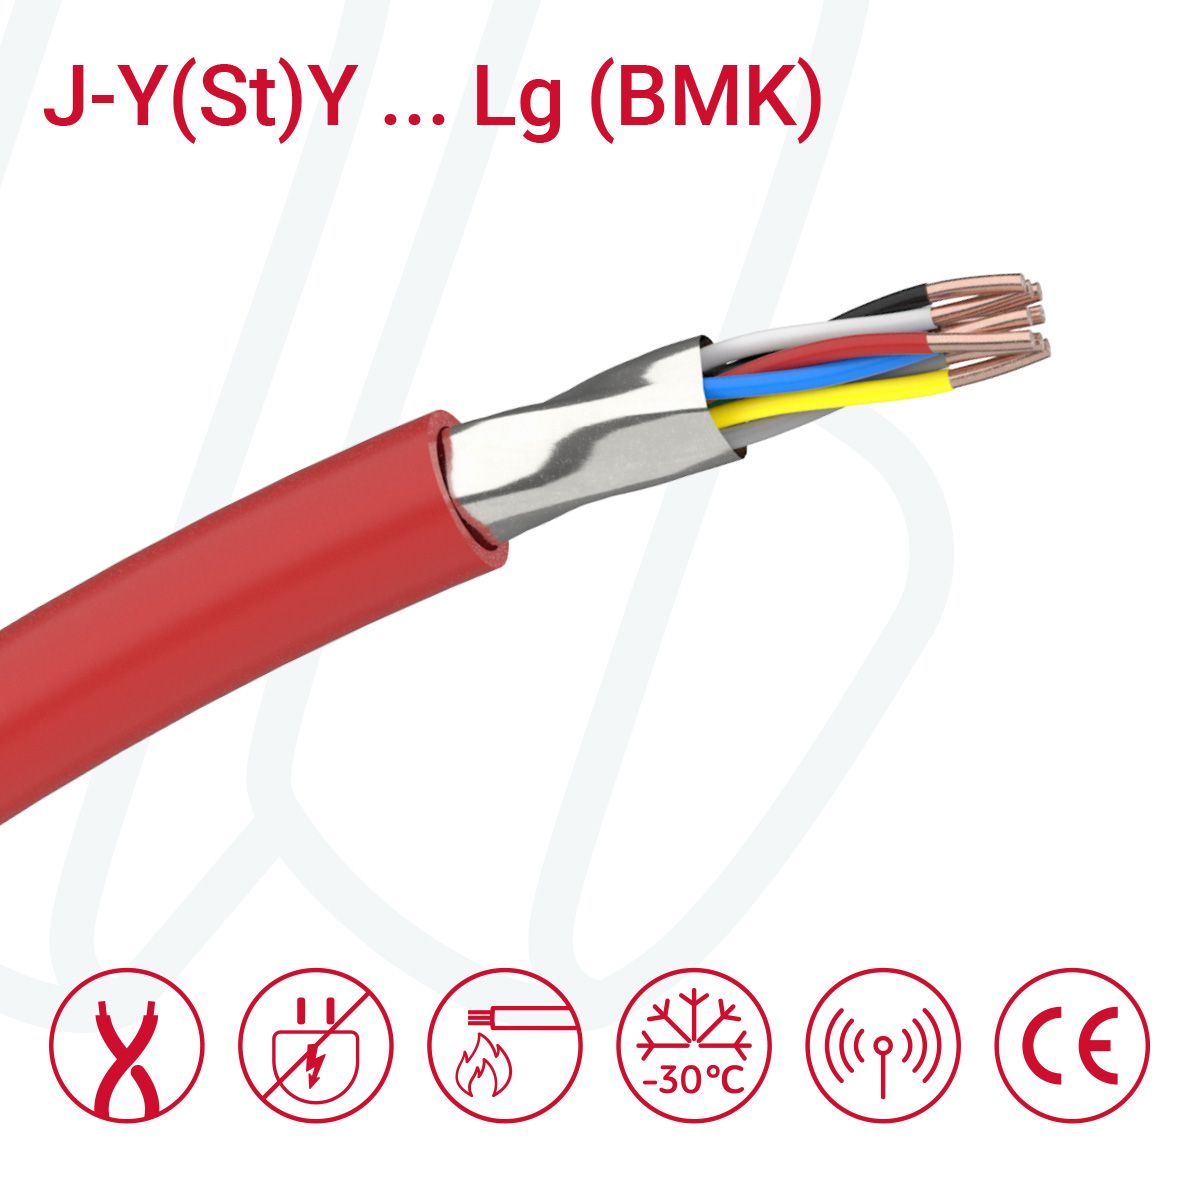 Кабель J-Y(St)Y ... Lg 01X2X0.8 (0.5мм²) BMK червоний, 02, 0.52